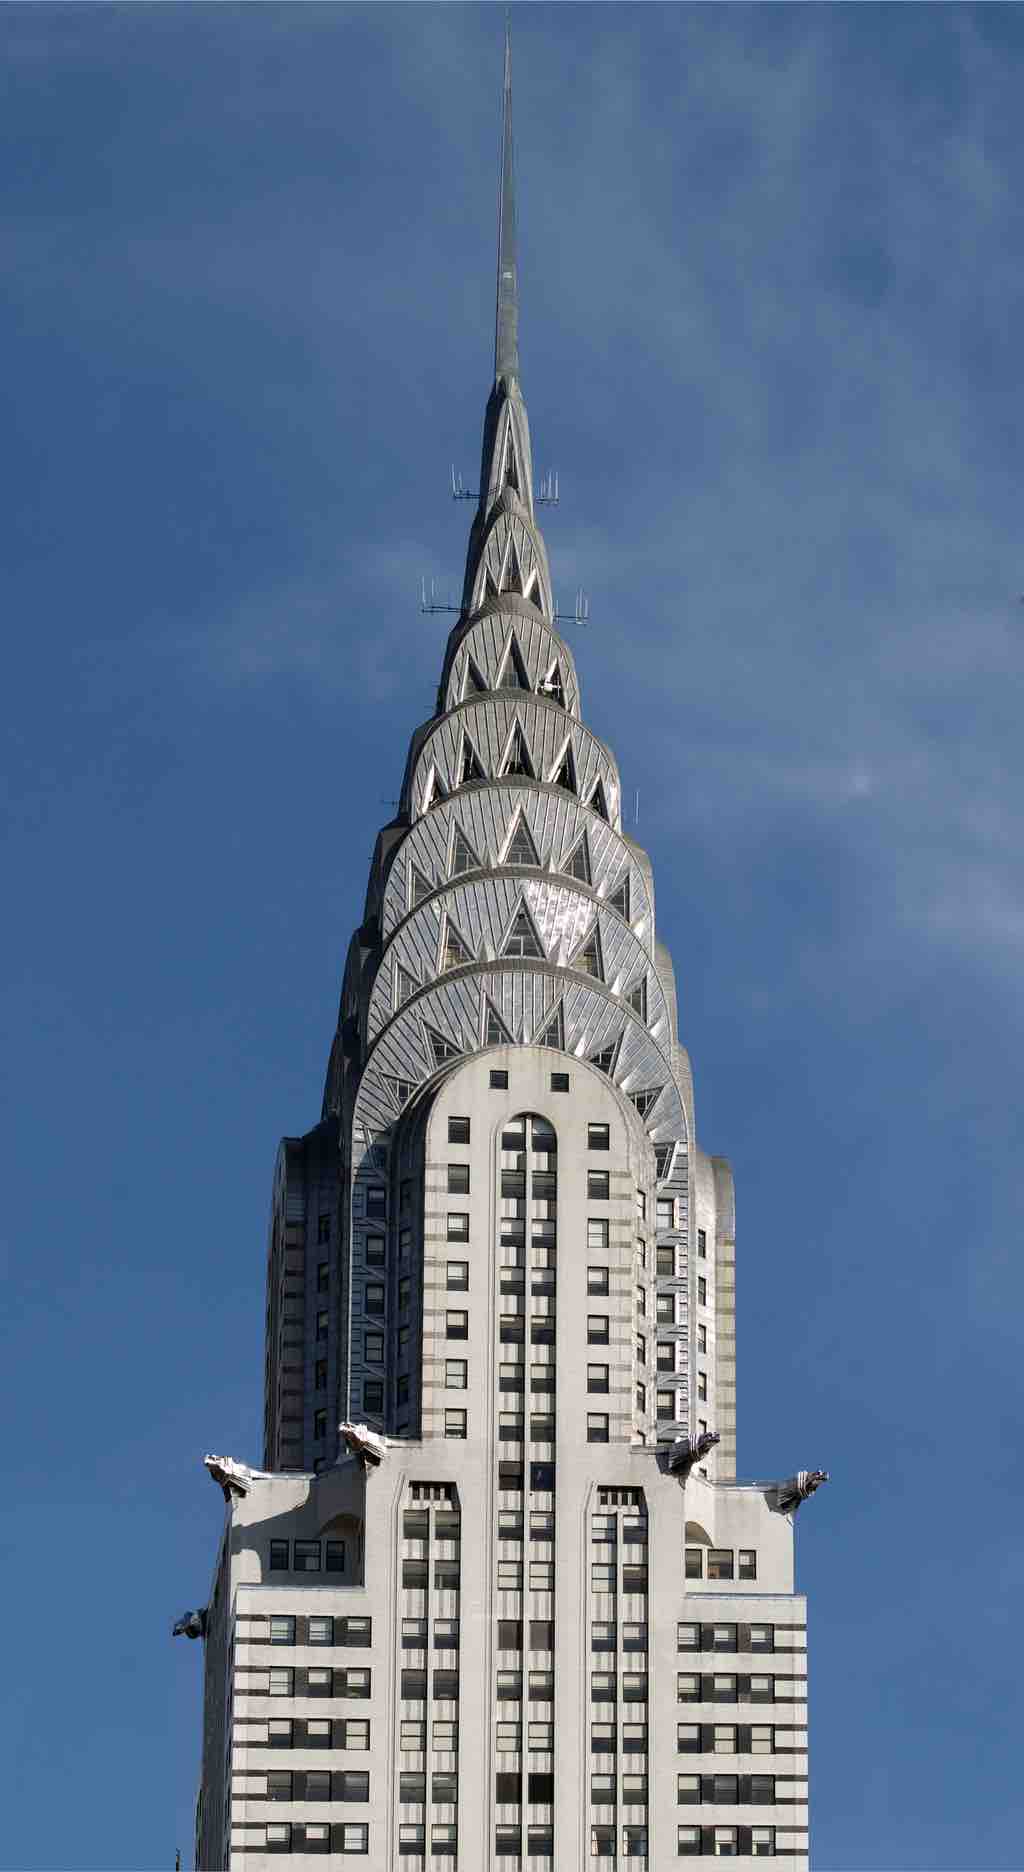 Spire of the Chrysler Building, New York